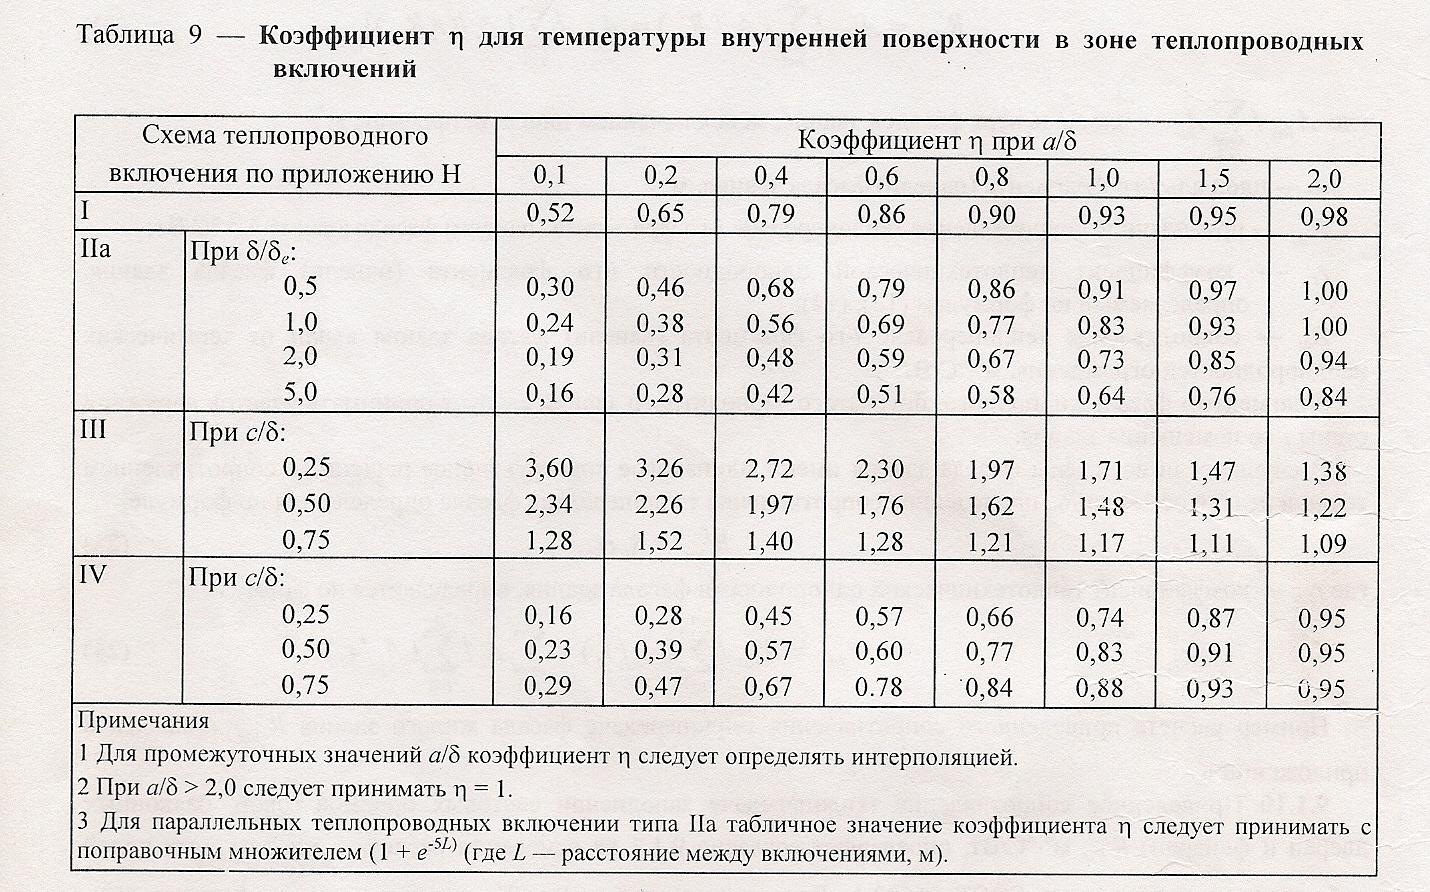 Расчет температуры наружного воздуха. Средняя температура отопительного периода СНИП таблица. Теплопроводные включения. Расчетная температура наружного воздуха для Москвы. Расчётная температура наружного воздуха за отопительный период.